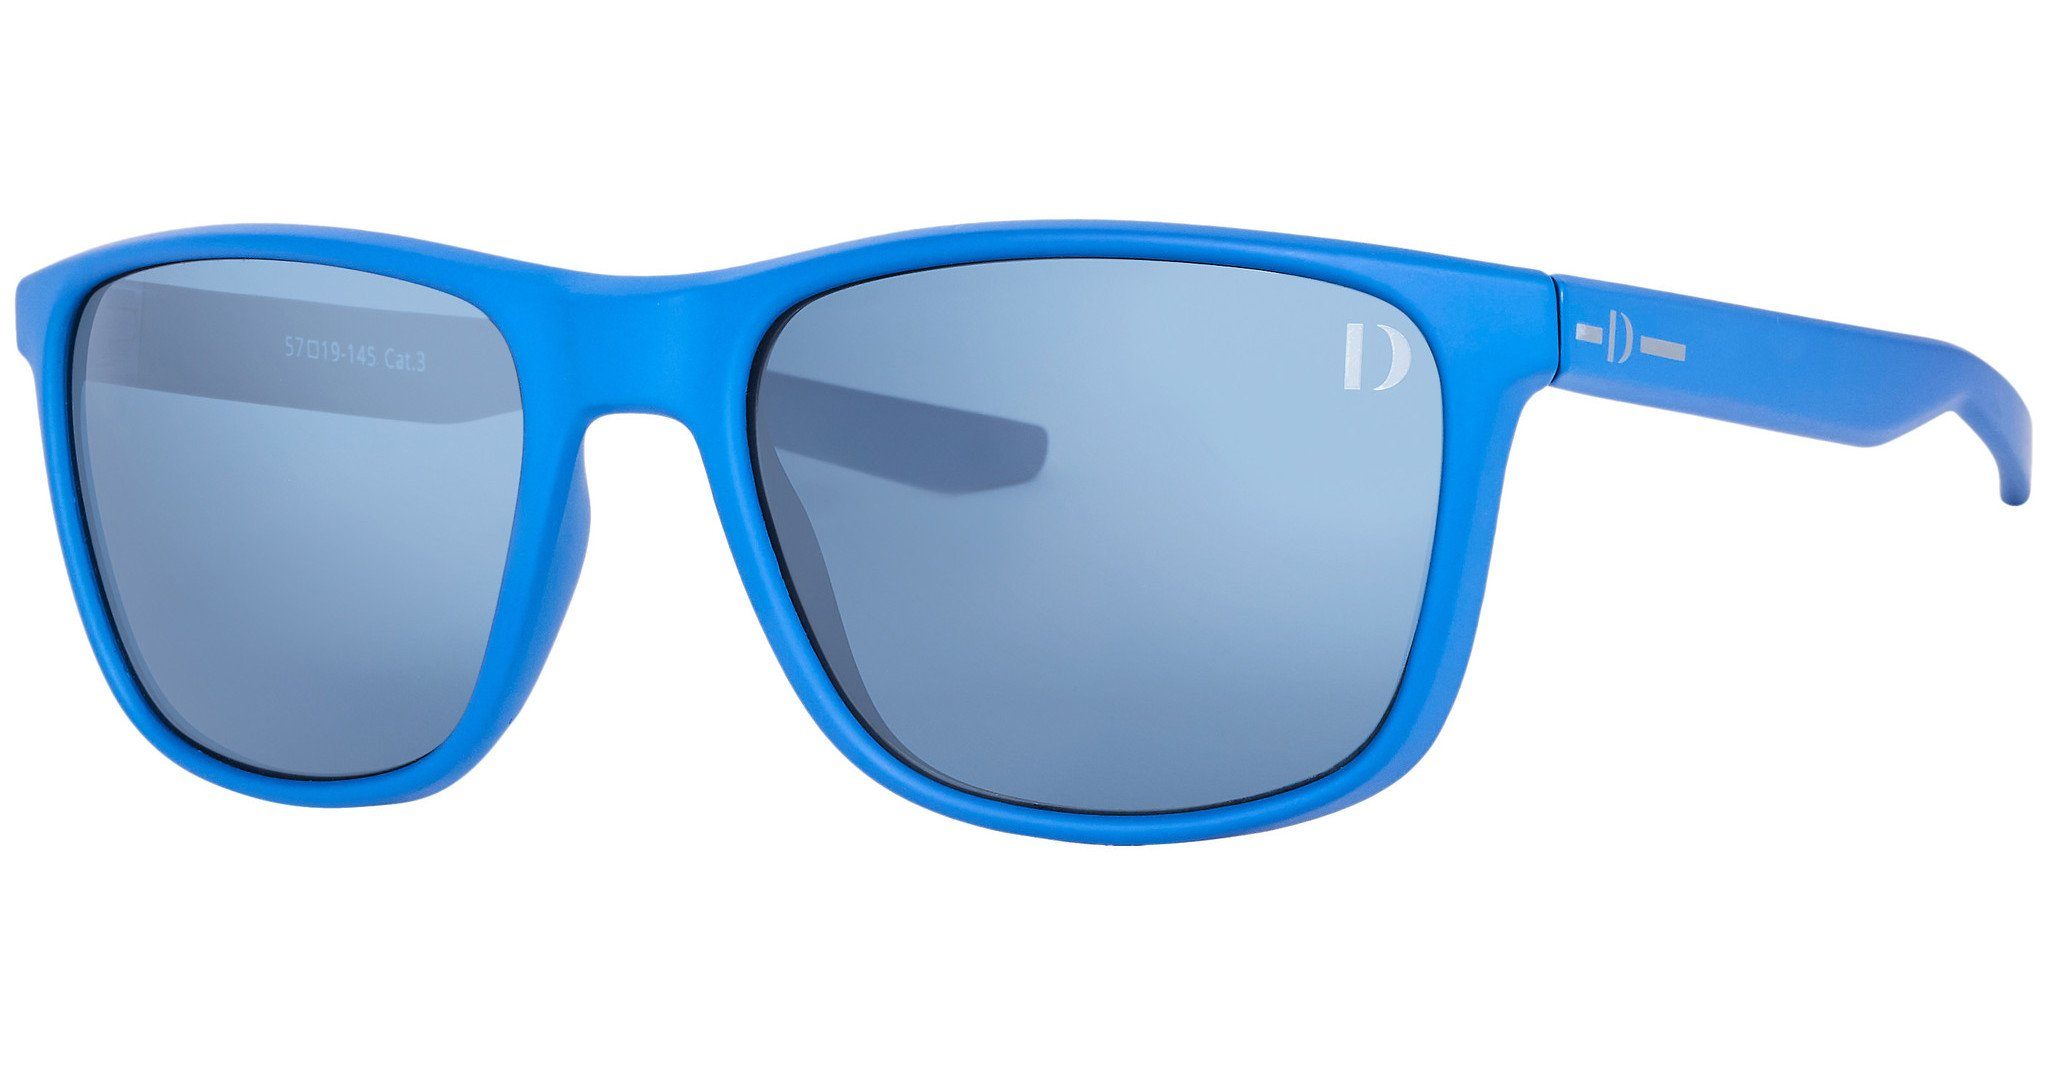 Dieter Bohlen Sonnenbrille EDITION 4 blau | Sonnenbrillen